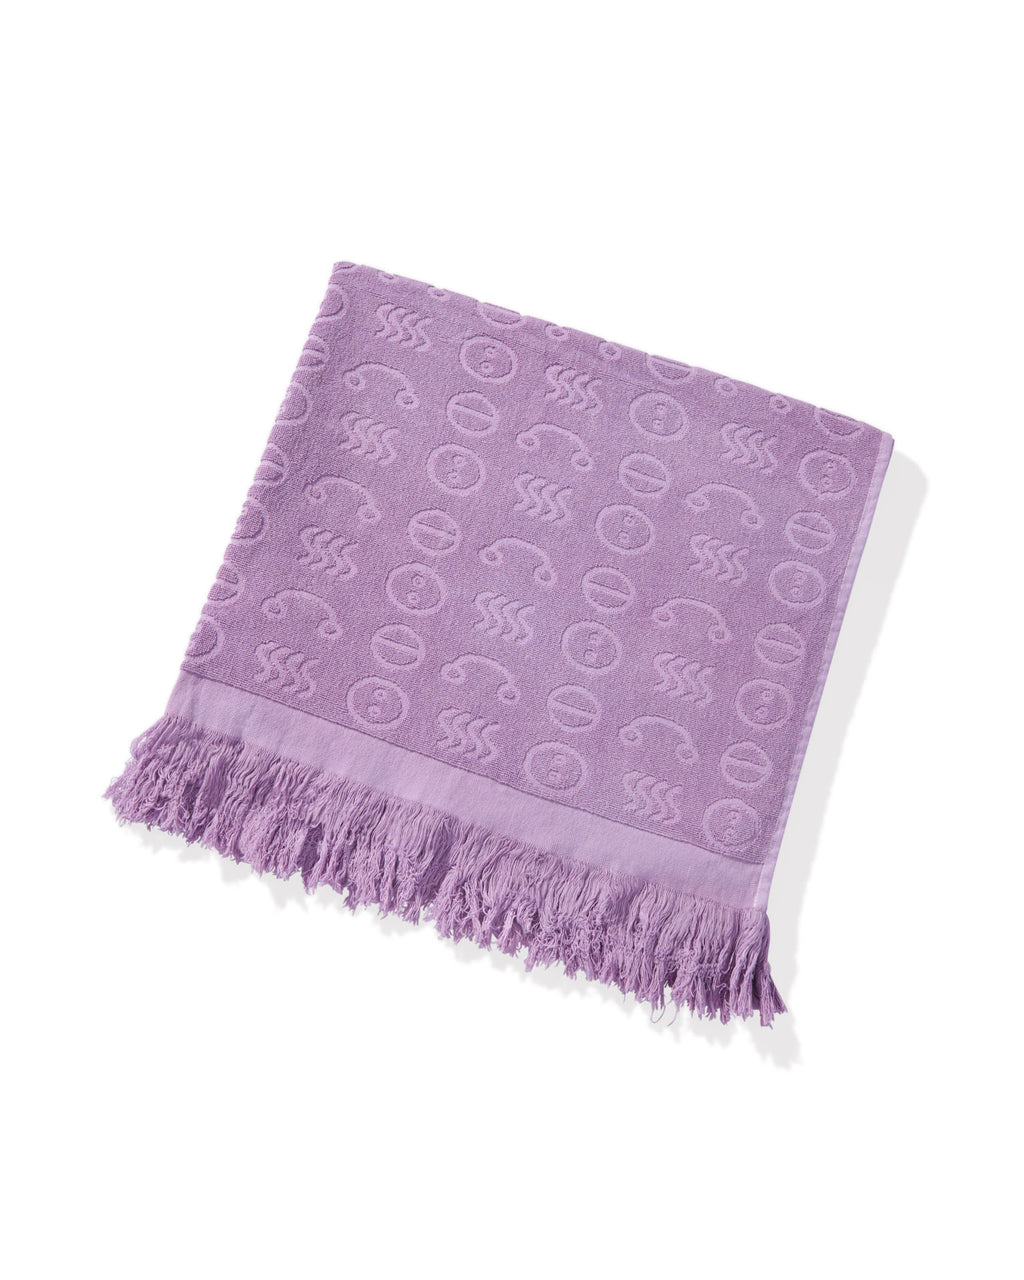 Towels | Lucy Folk Homewares | Lucy Folk